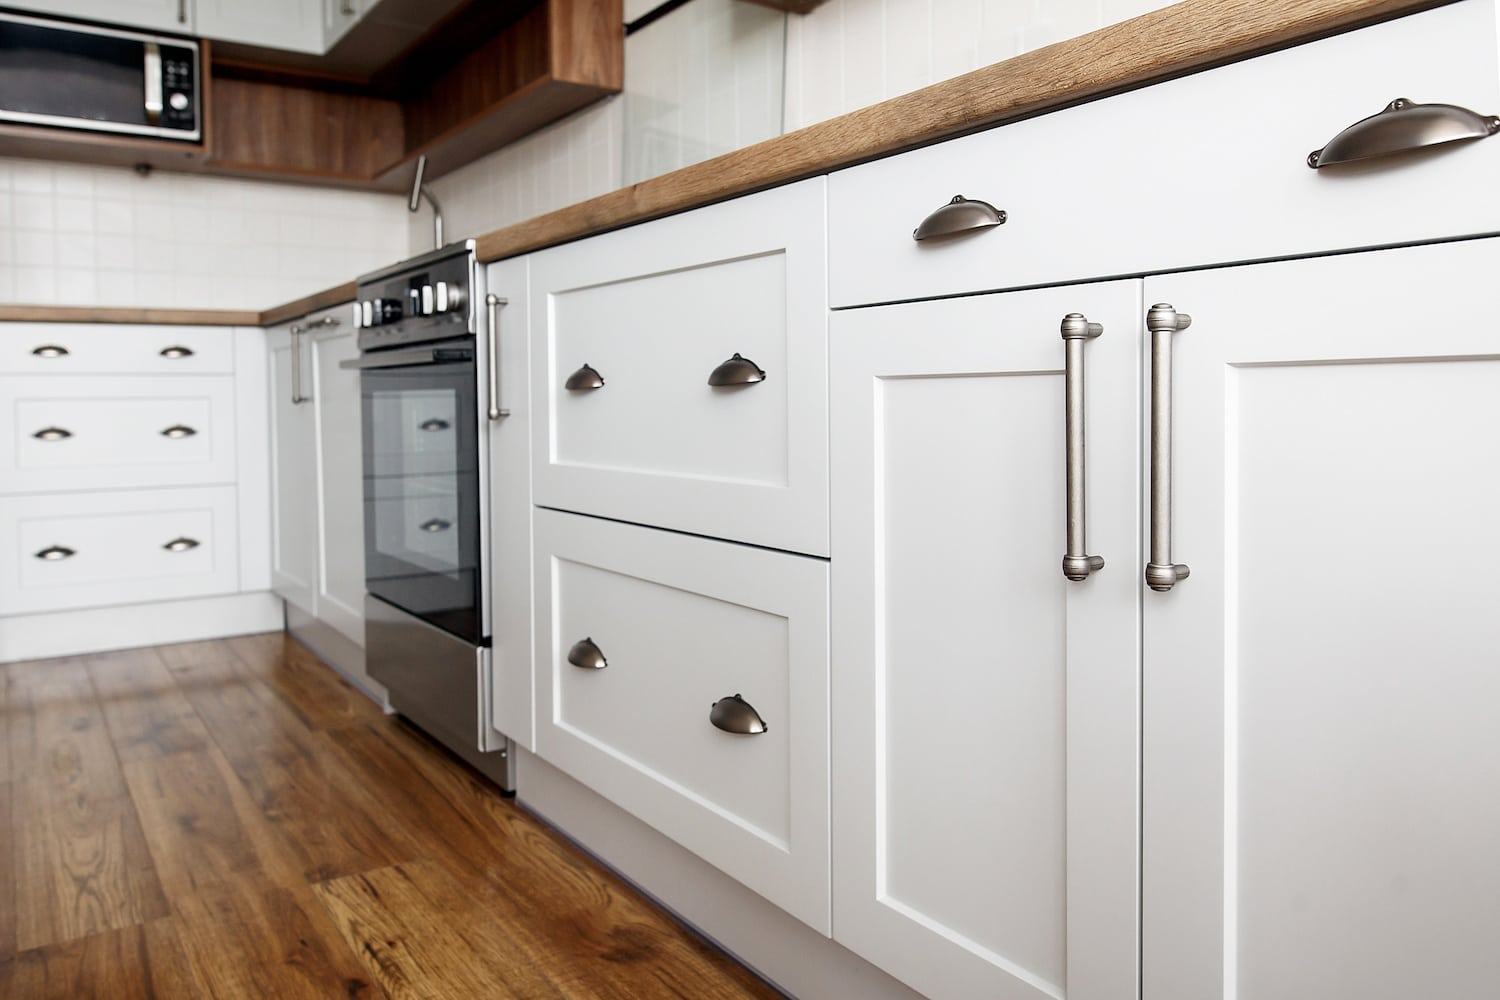 diy kitchen remodel cabinet